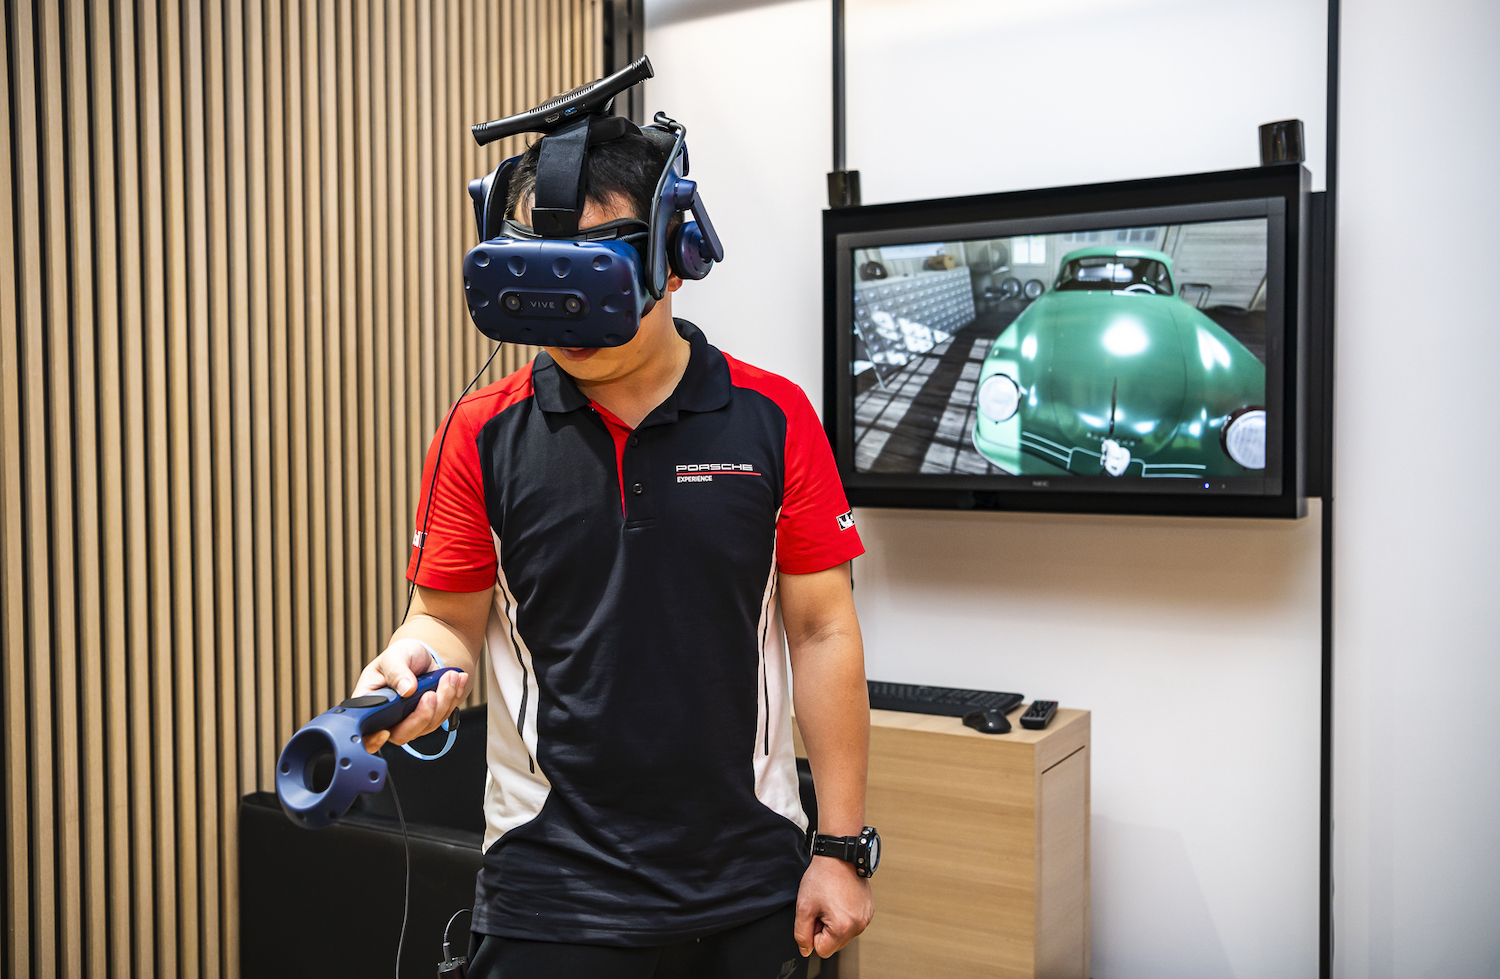 Porsche NOW 概念店現場備有 Porsche 原廠 VR 設備，可預約體驗。